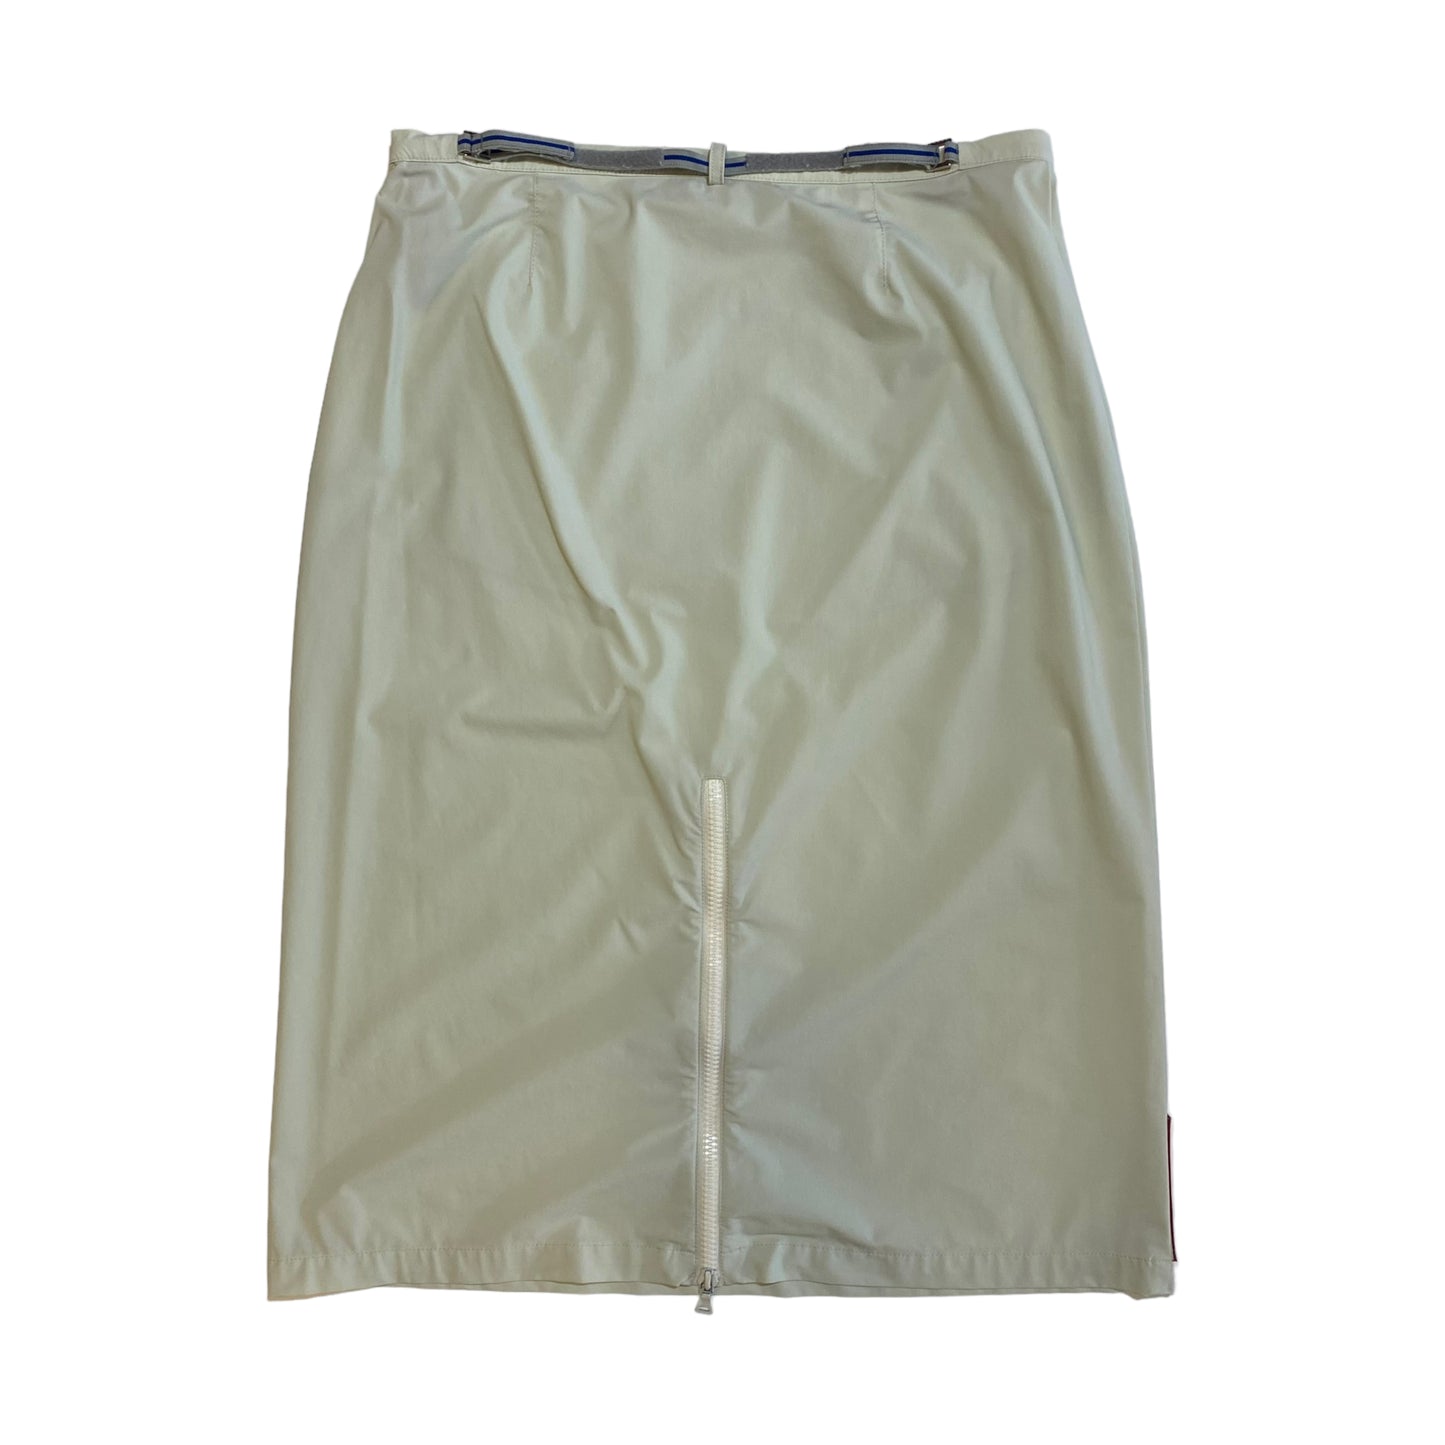 S/S 2000 Prada Sport  Skirt (36W)